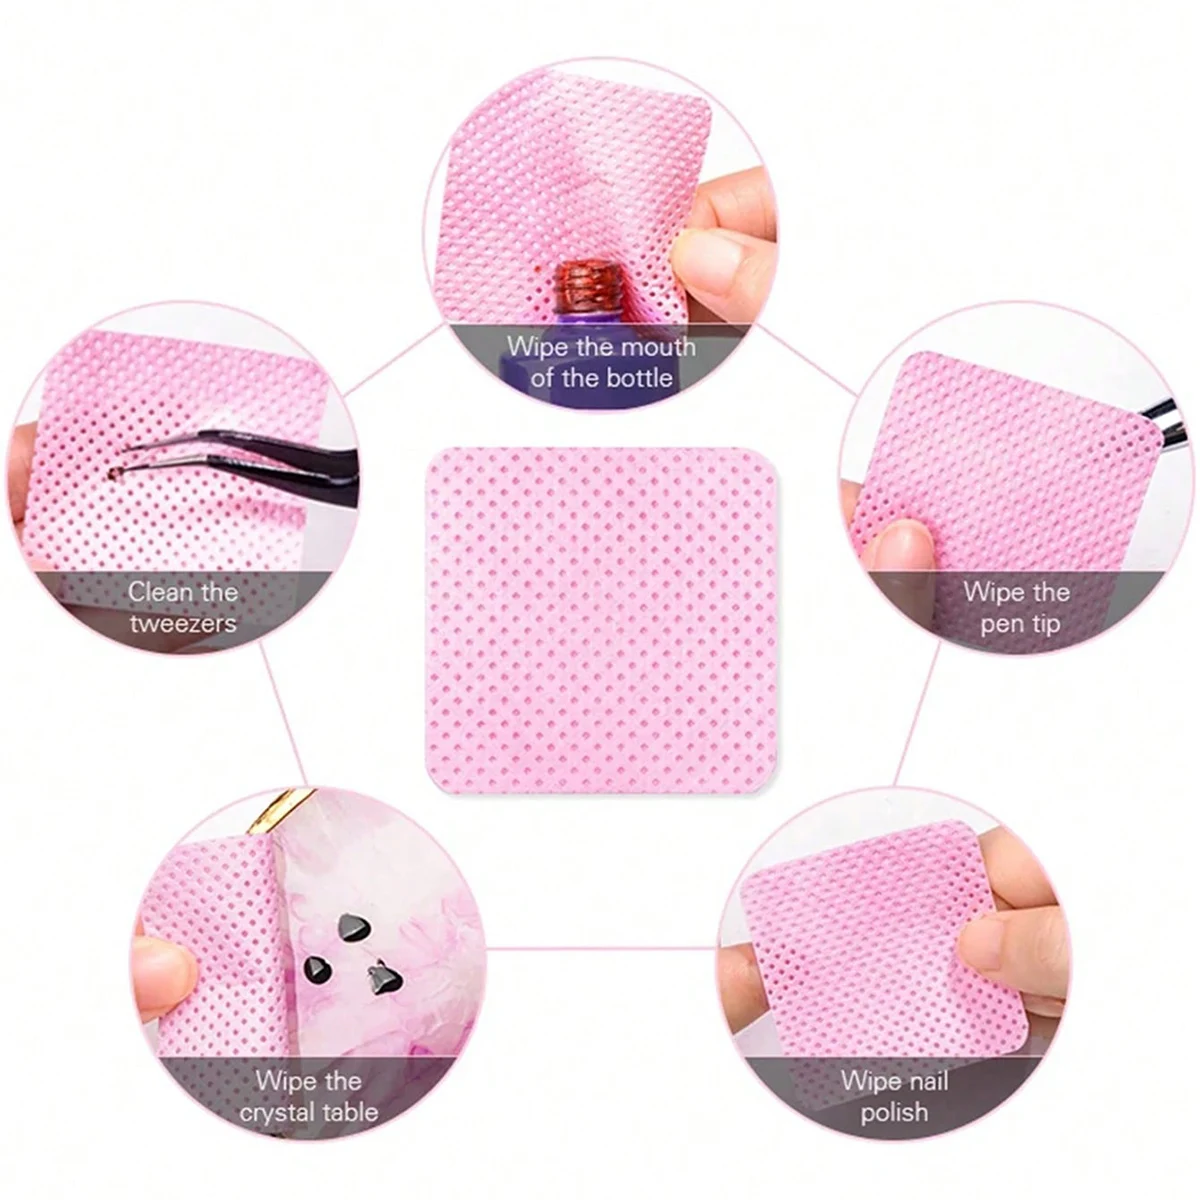 Tamponi di cotone senza pelucchi salviette per la rimozione dello smalto per unghie strumento per la pulizia delle unghie salviette per la pulizia delle unghie punte per la rimozione dello smalto Gel UV salviette di carta